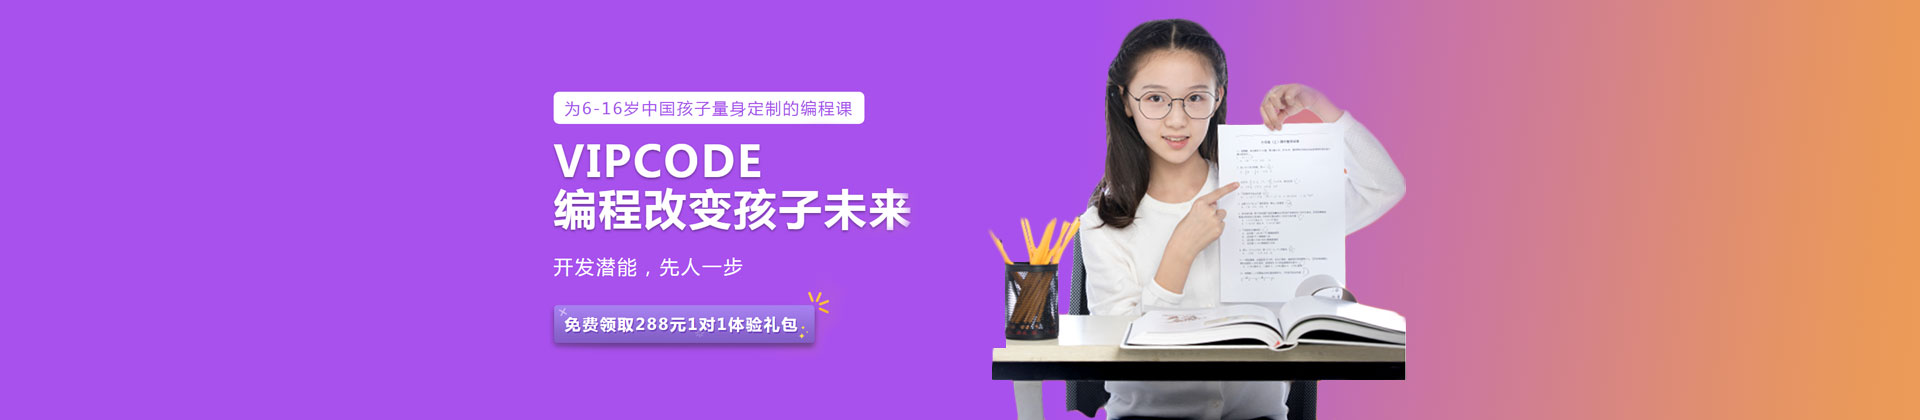 北京VIPCODE是一所专注于少儿在线编程培训学校,课程涵盖